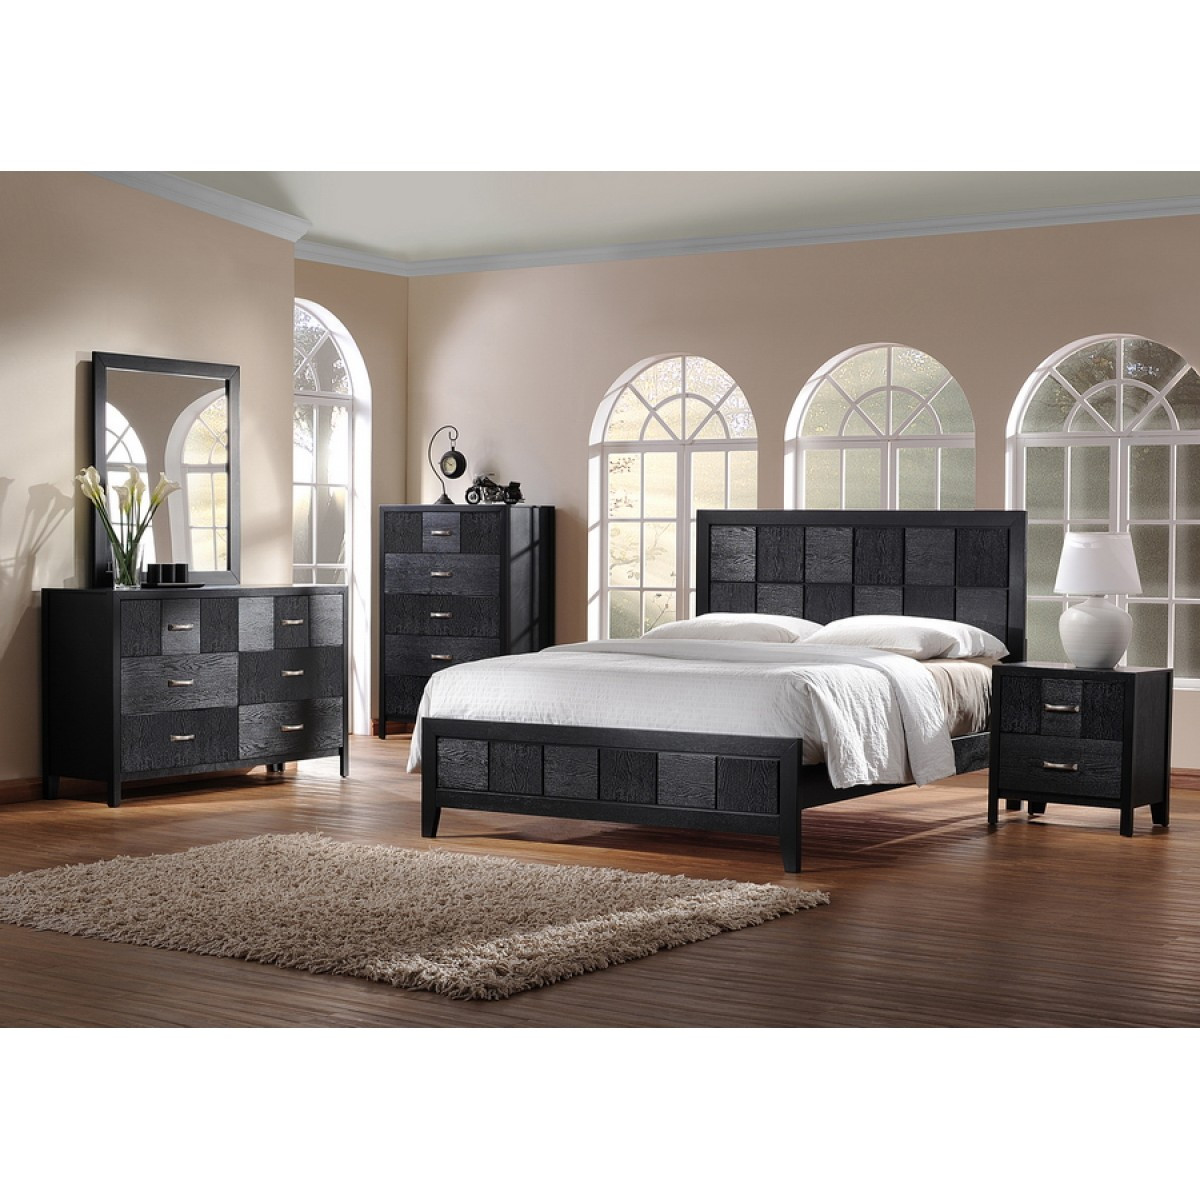 Modern King Bedroom Sets
 Montserrat Black Wood 5 Piece King Size Modern Bedroom Set